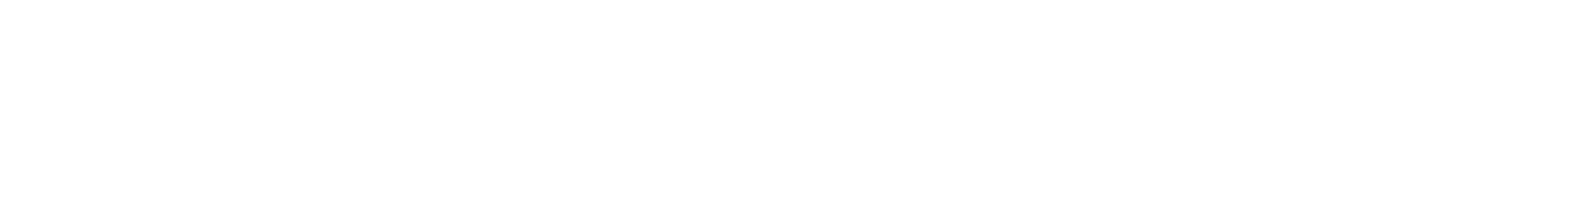 Washington Trust Bancorp logo grand pour les fonds sombres (PNG transparent)